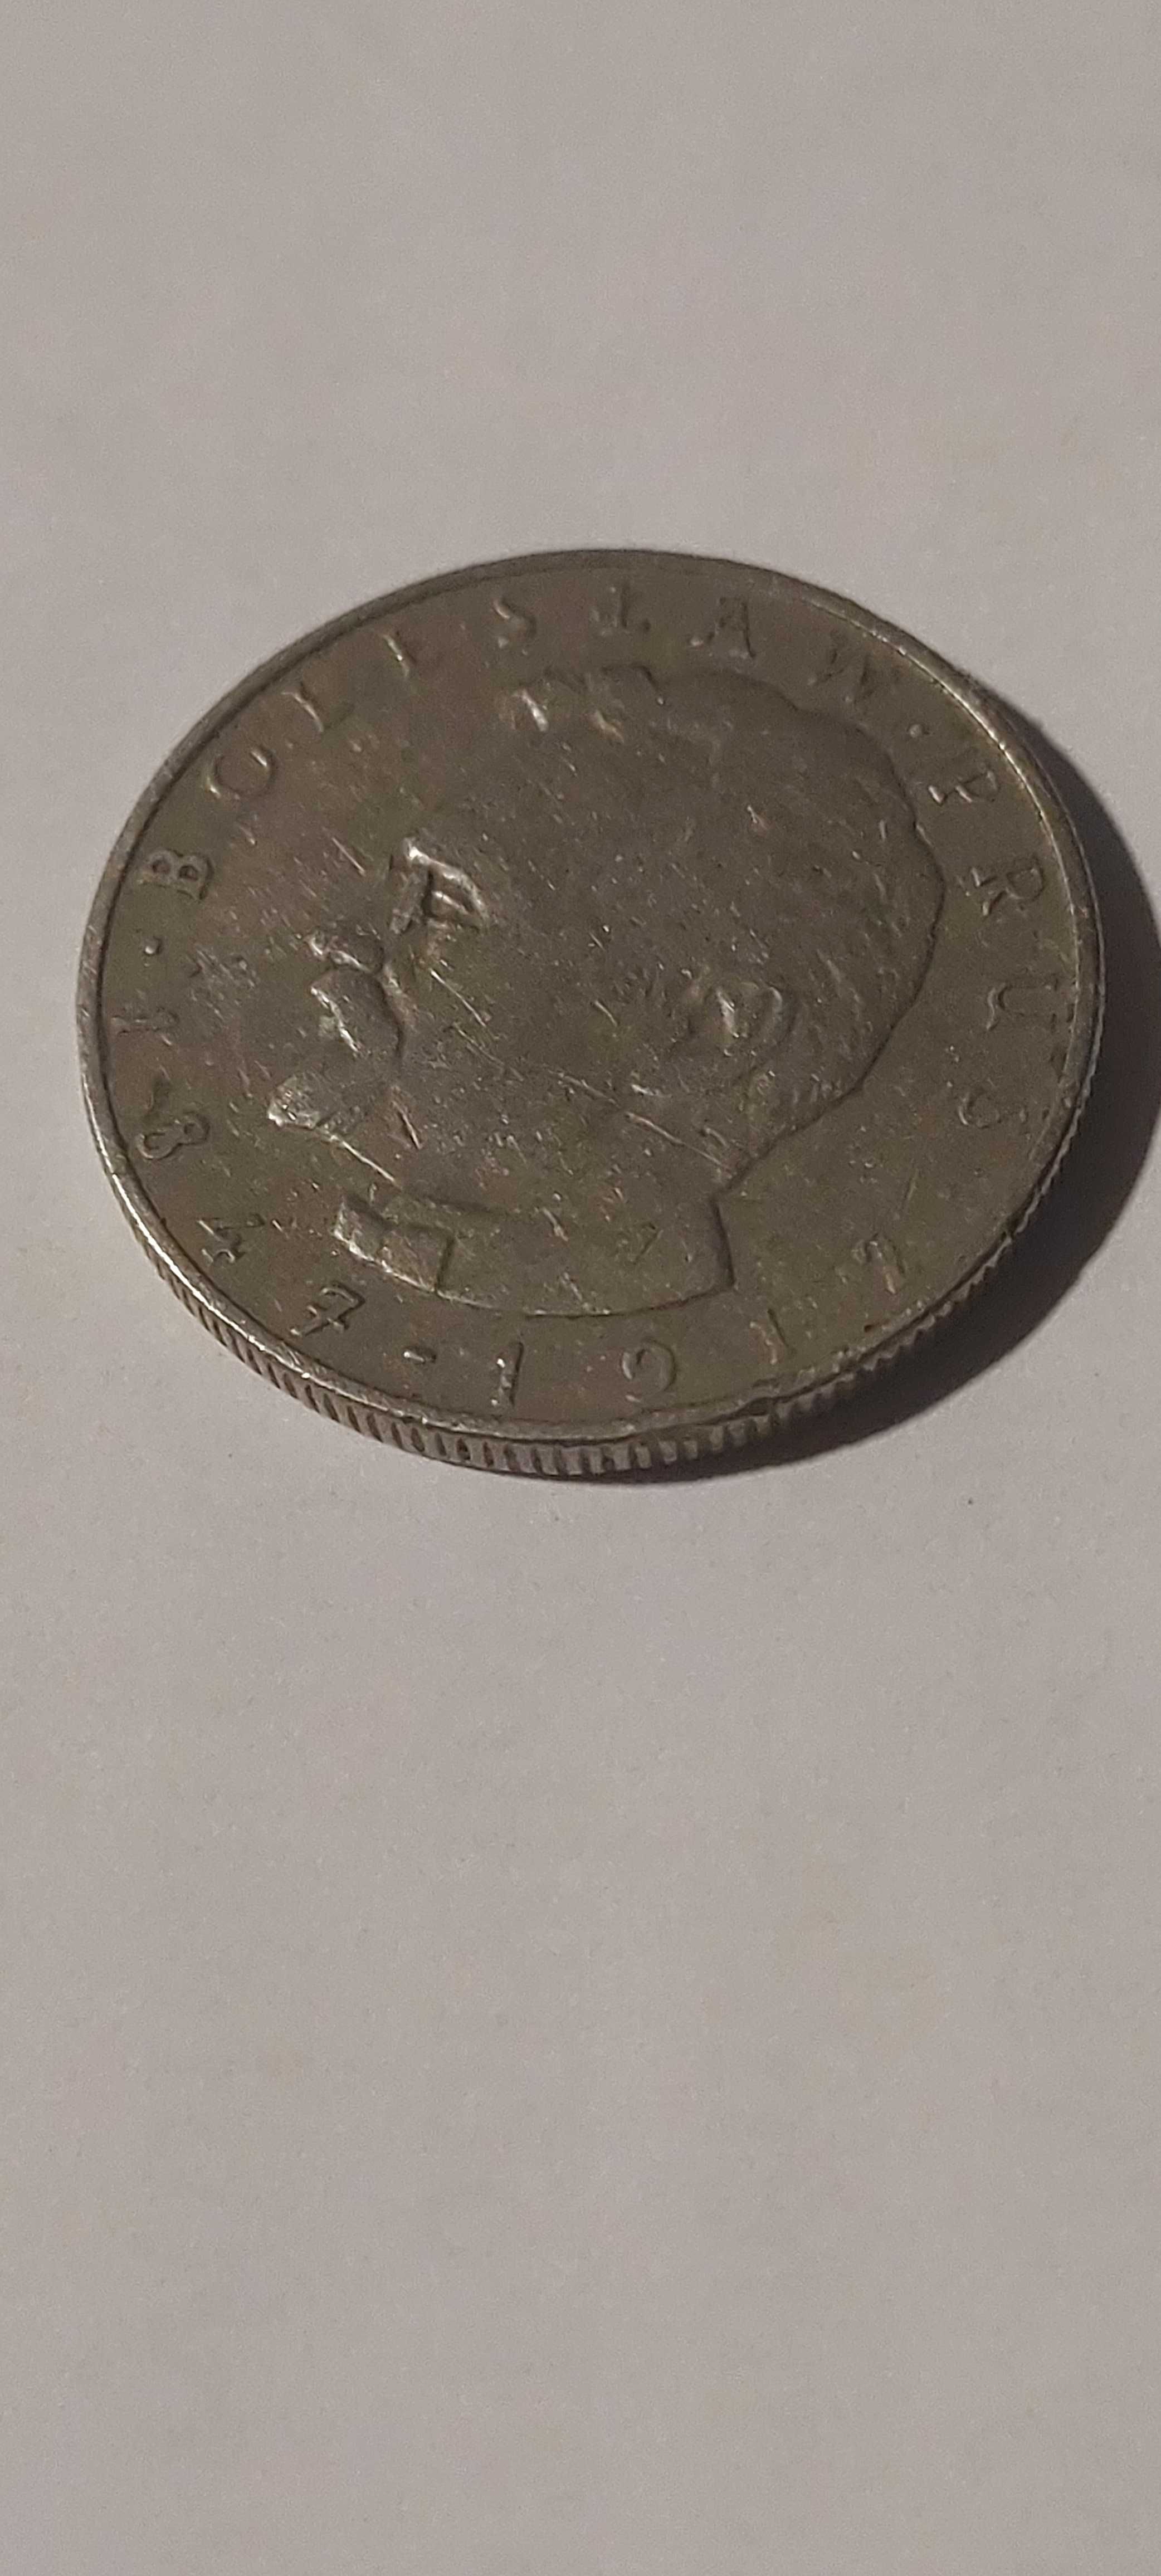 Moneta 10 zł z 1975 r. - Bolesław Prus